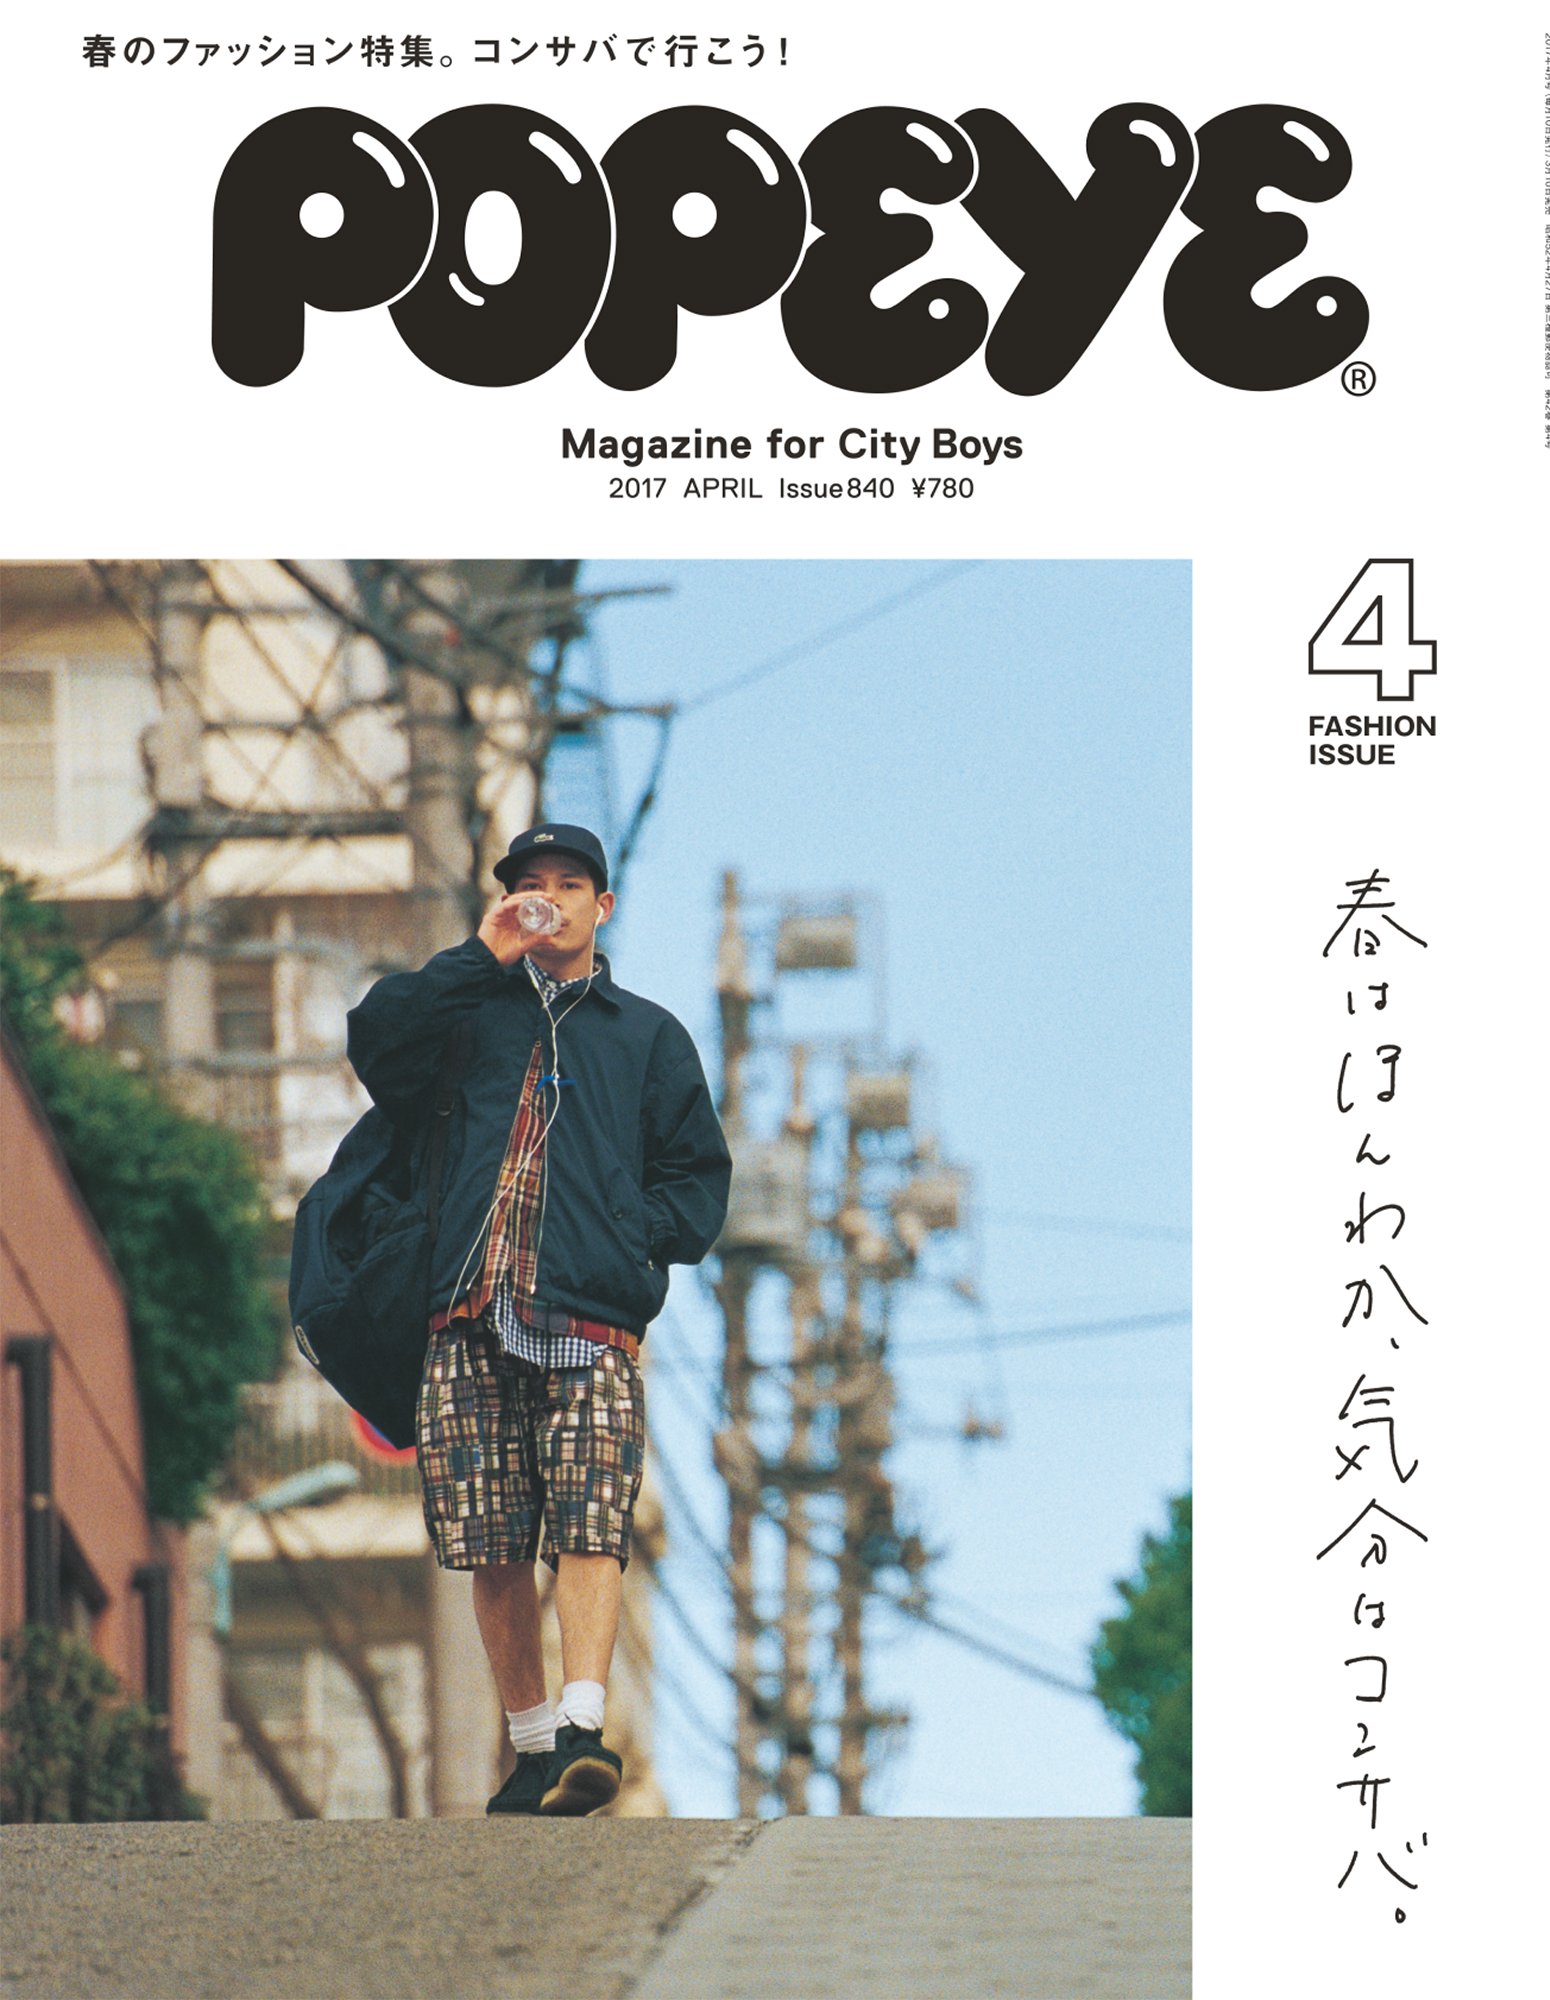 POPEYE 「Magazine for City Boys」